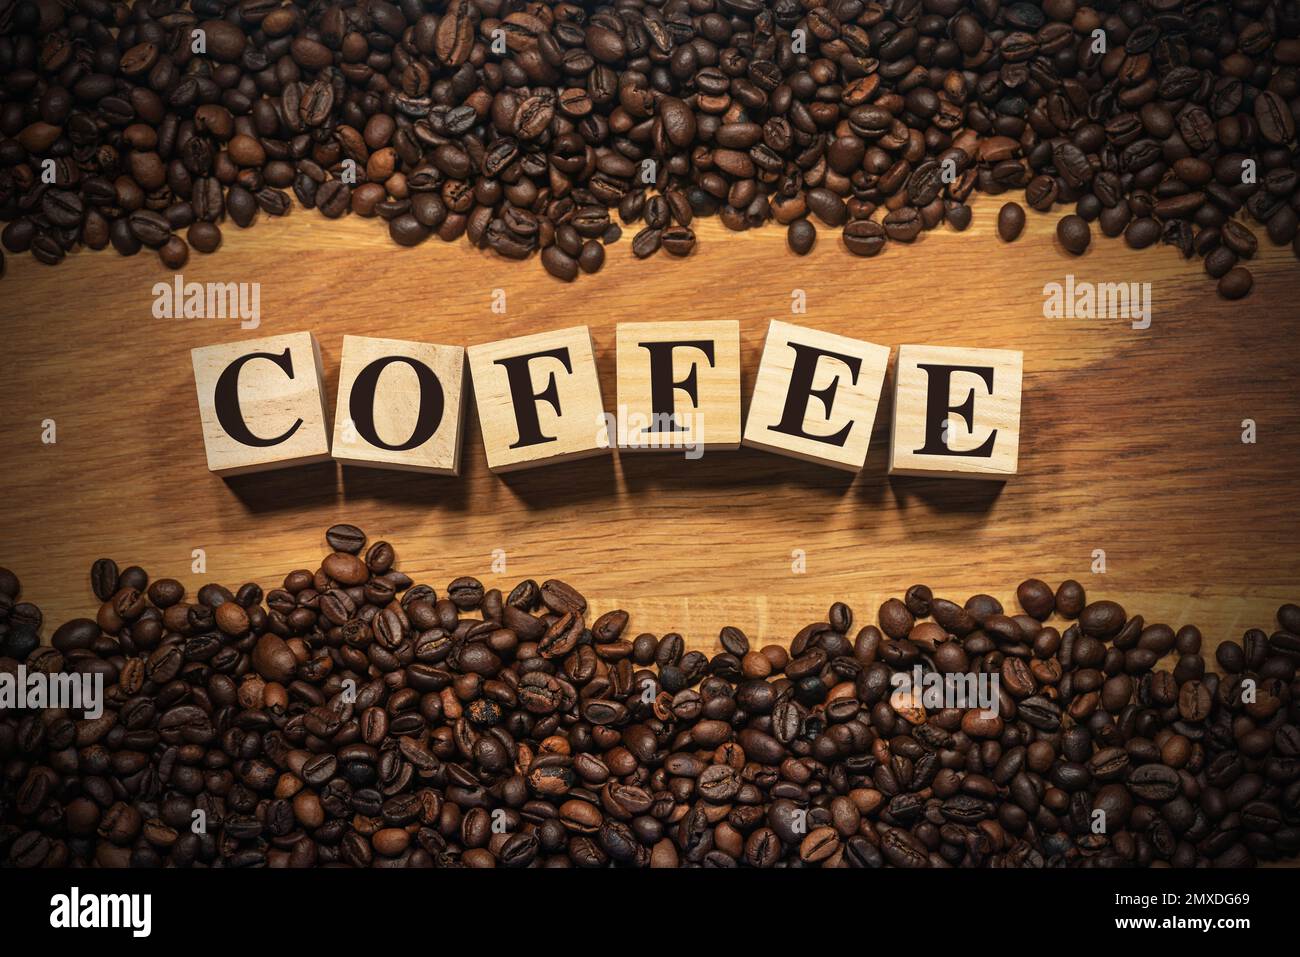 Grande gruppo di chicchi di caffè arrostiti su fondo di legno e il testo caffè, fatto di blocchi di legno. Fotografia. Foto Stock